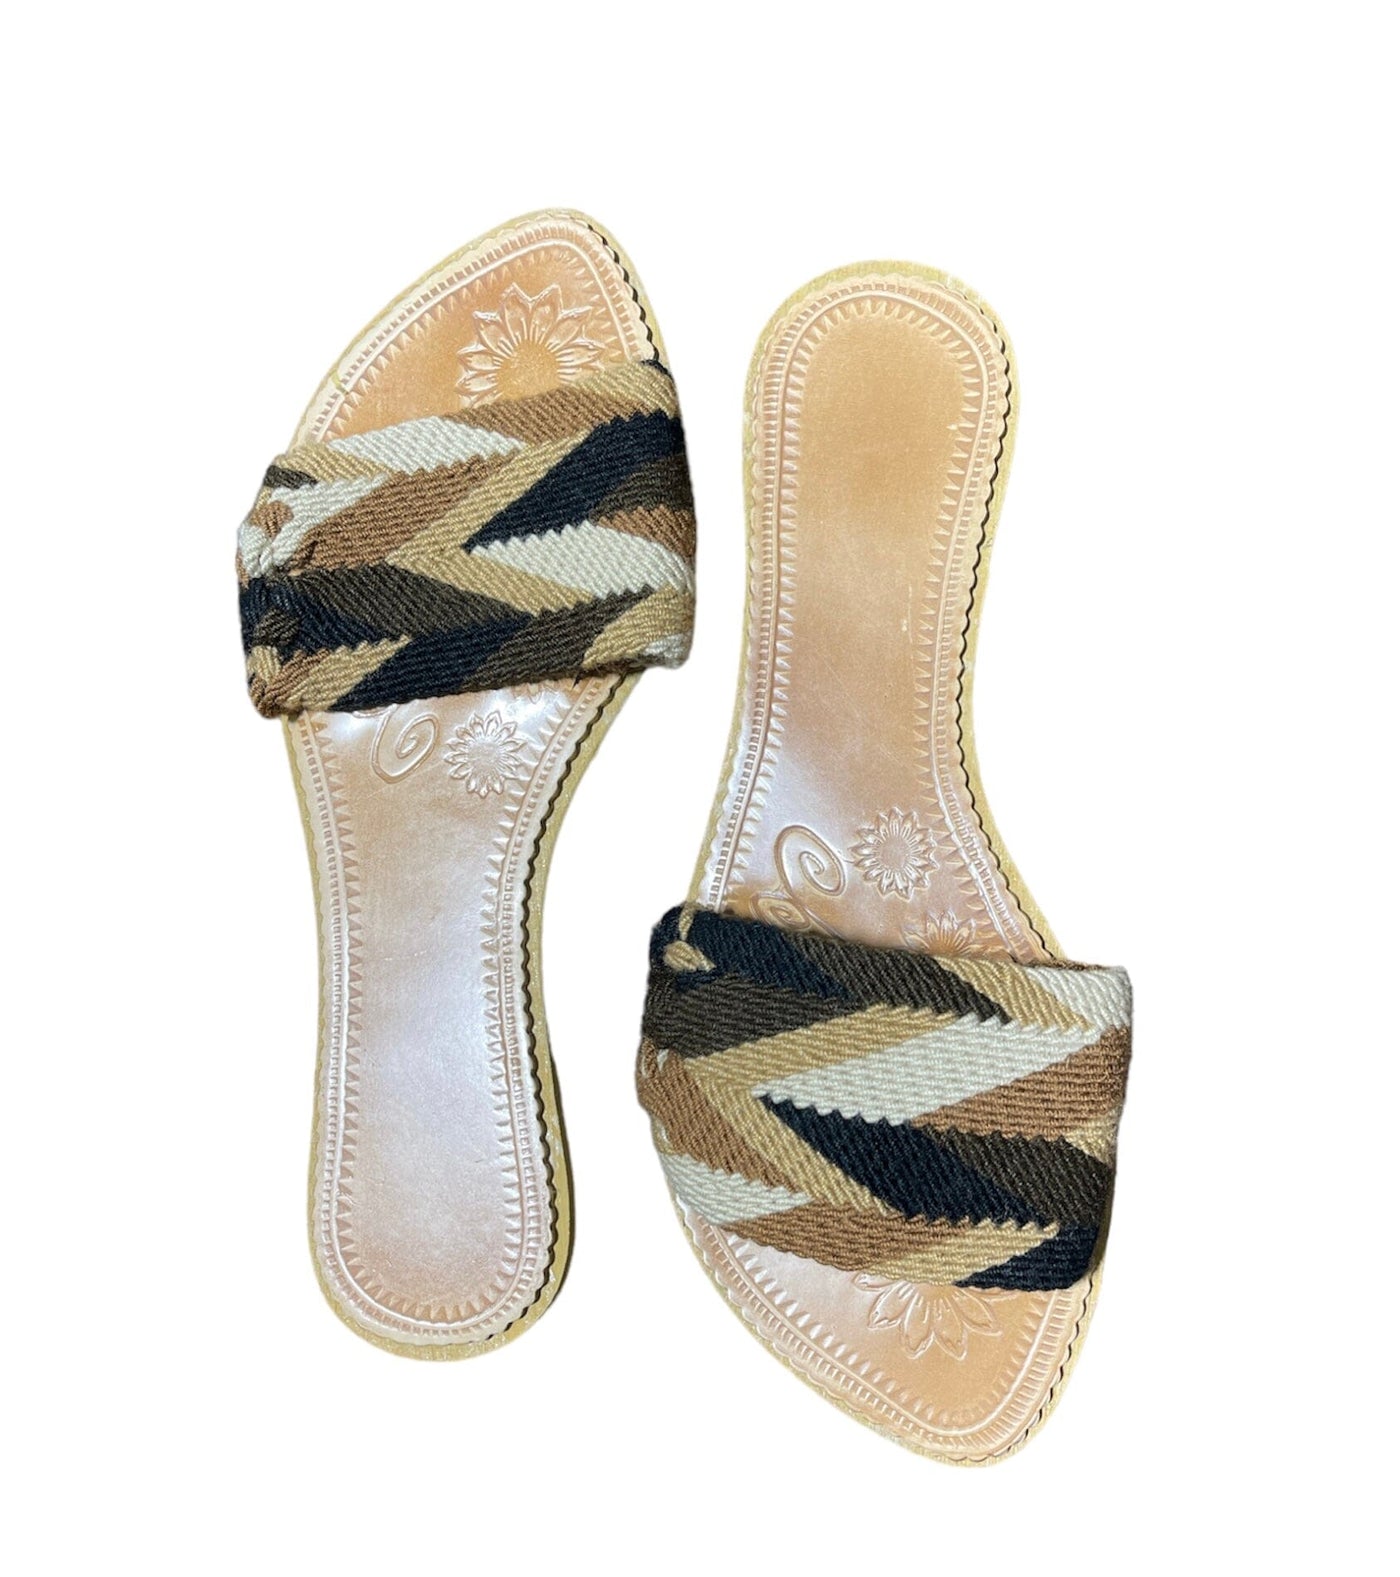 Shades of Brown Woven Sandals - Summer Flats Summer Sandals 